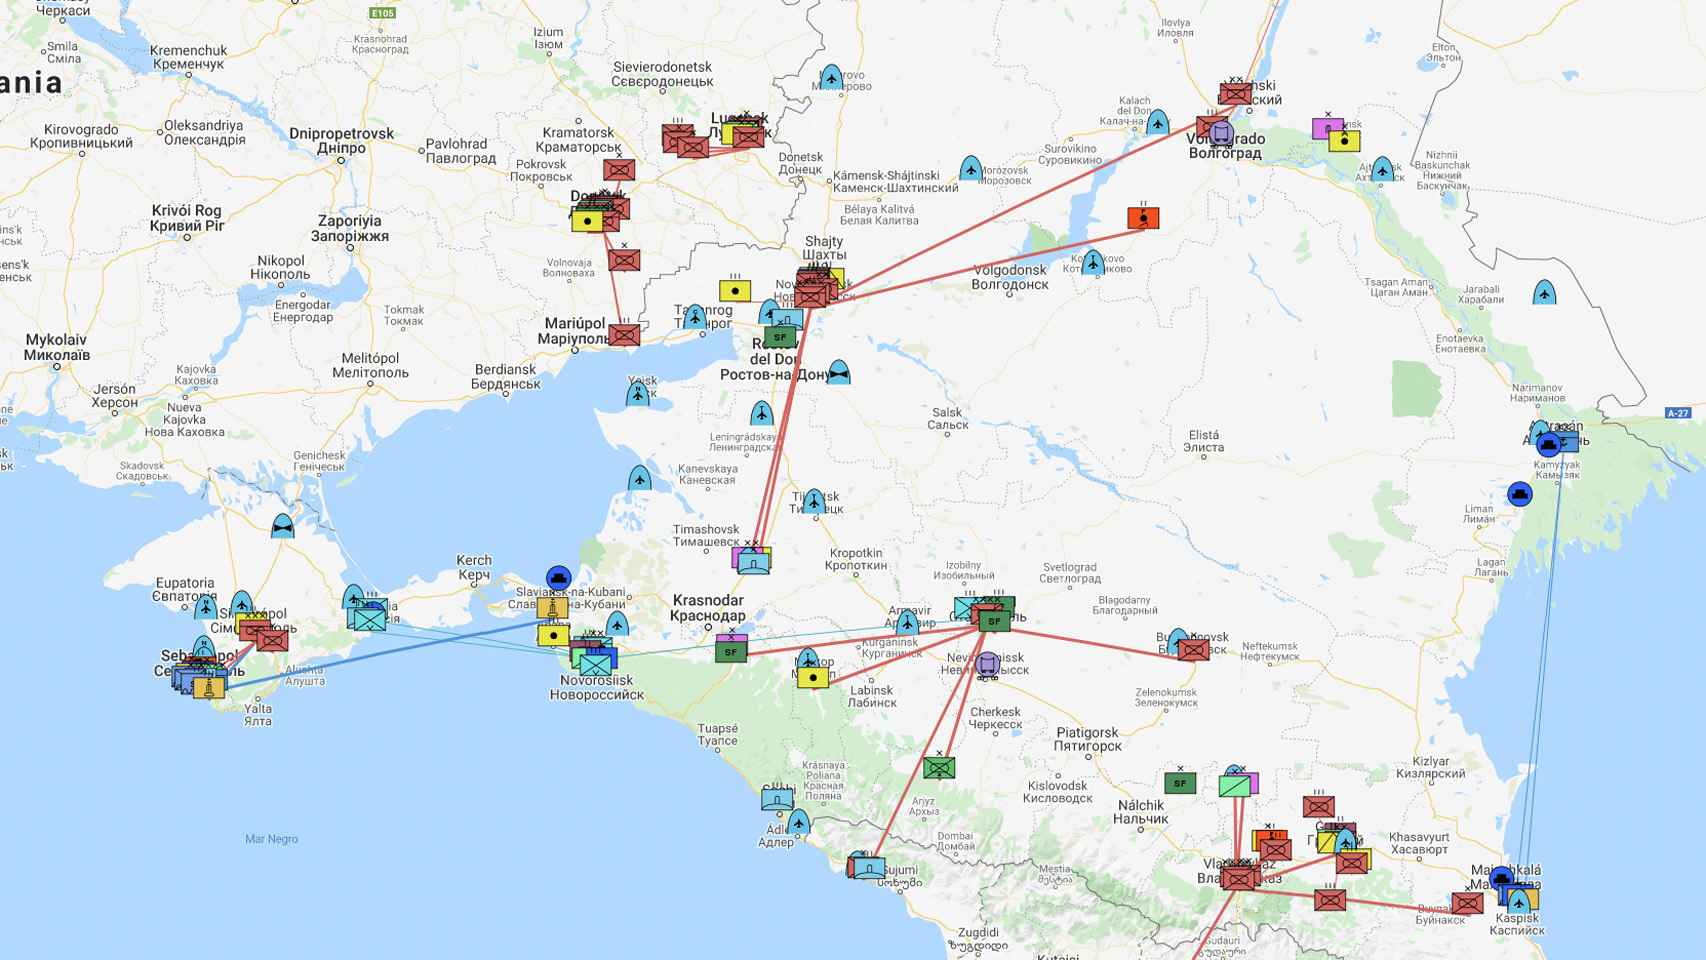 Mapa interactivo de fuerzas rusas.